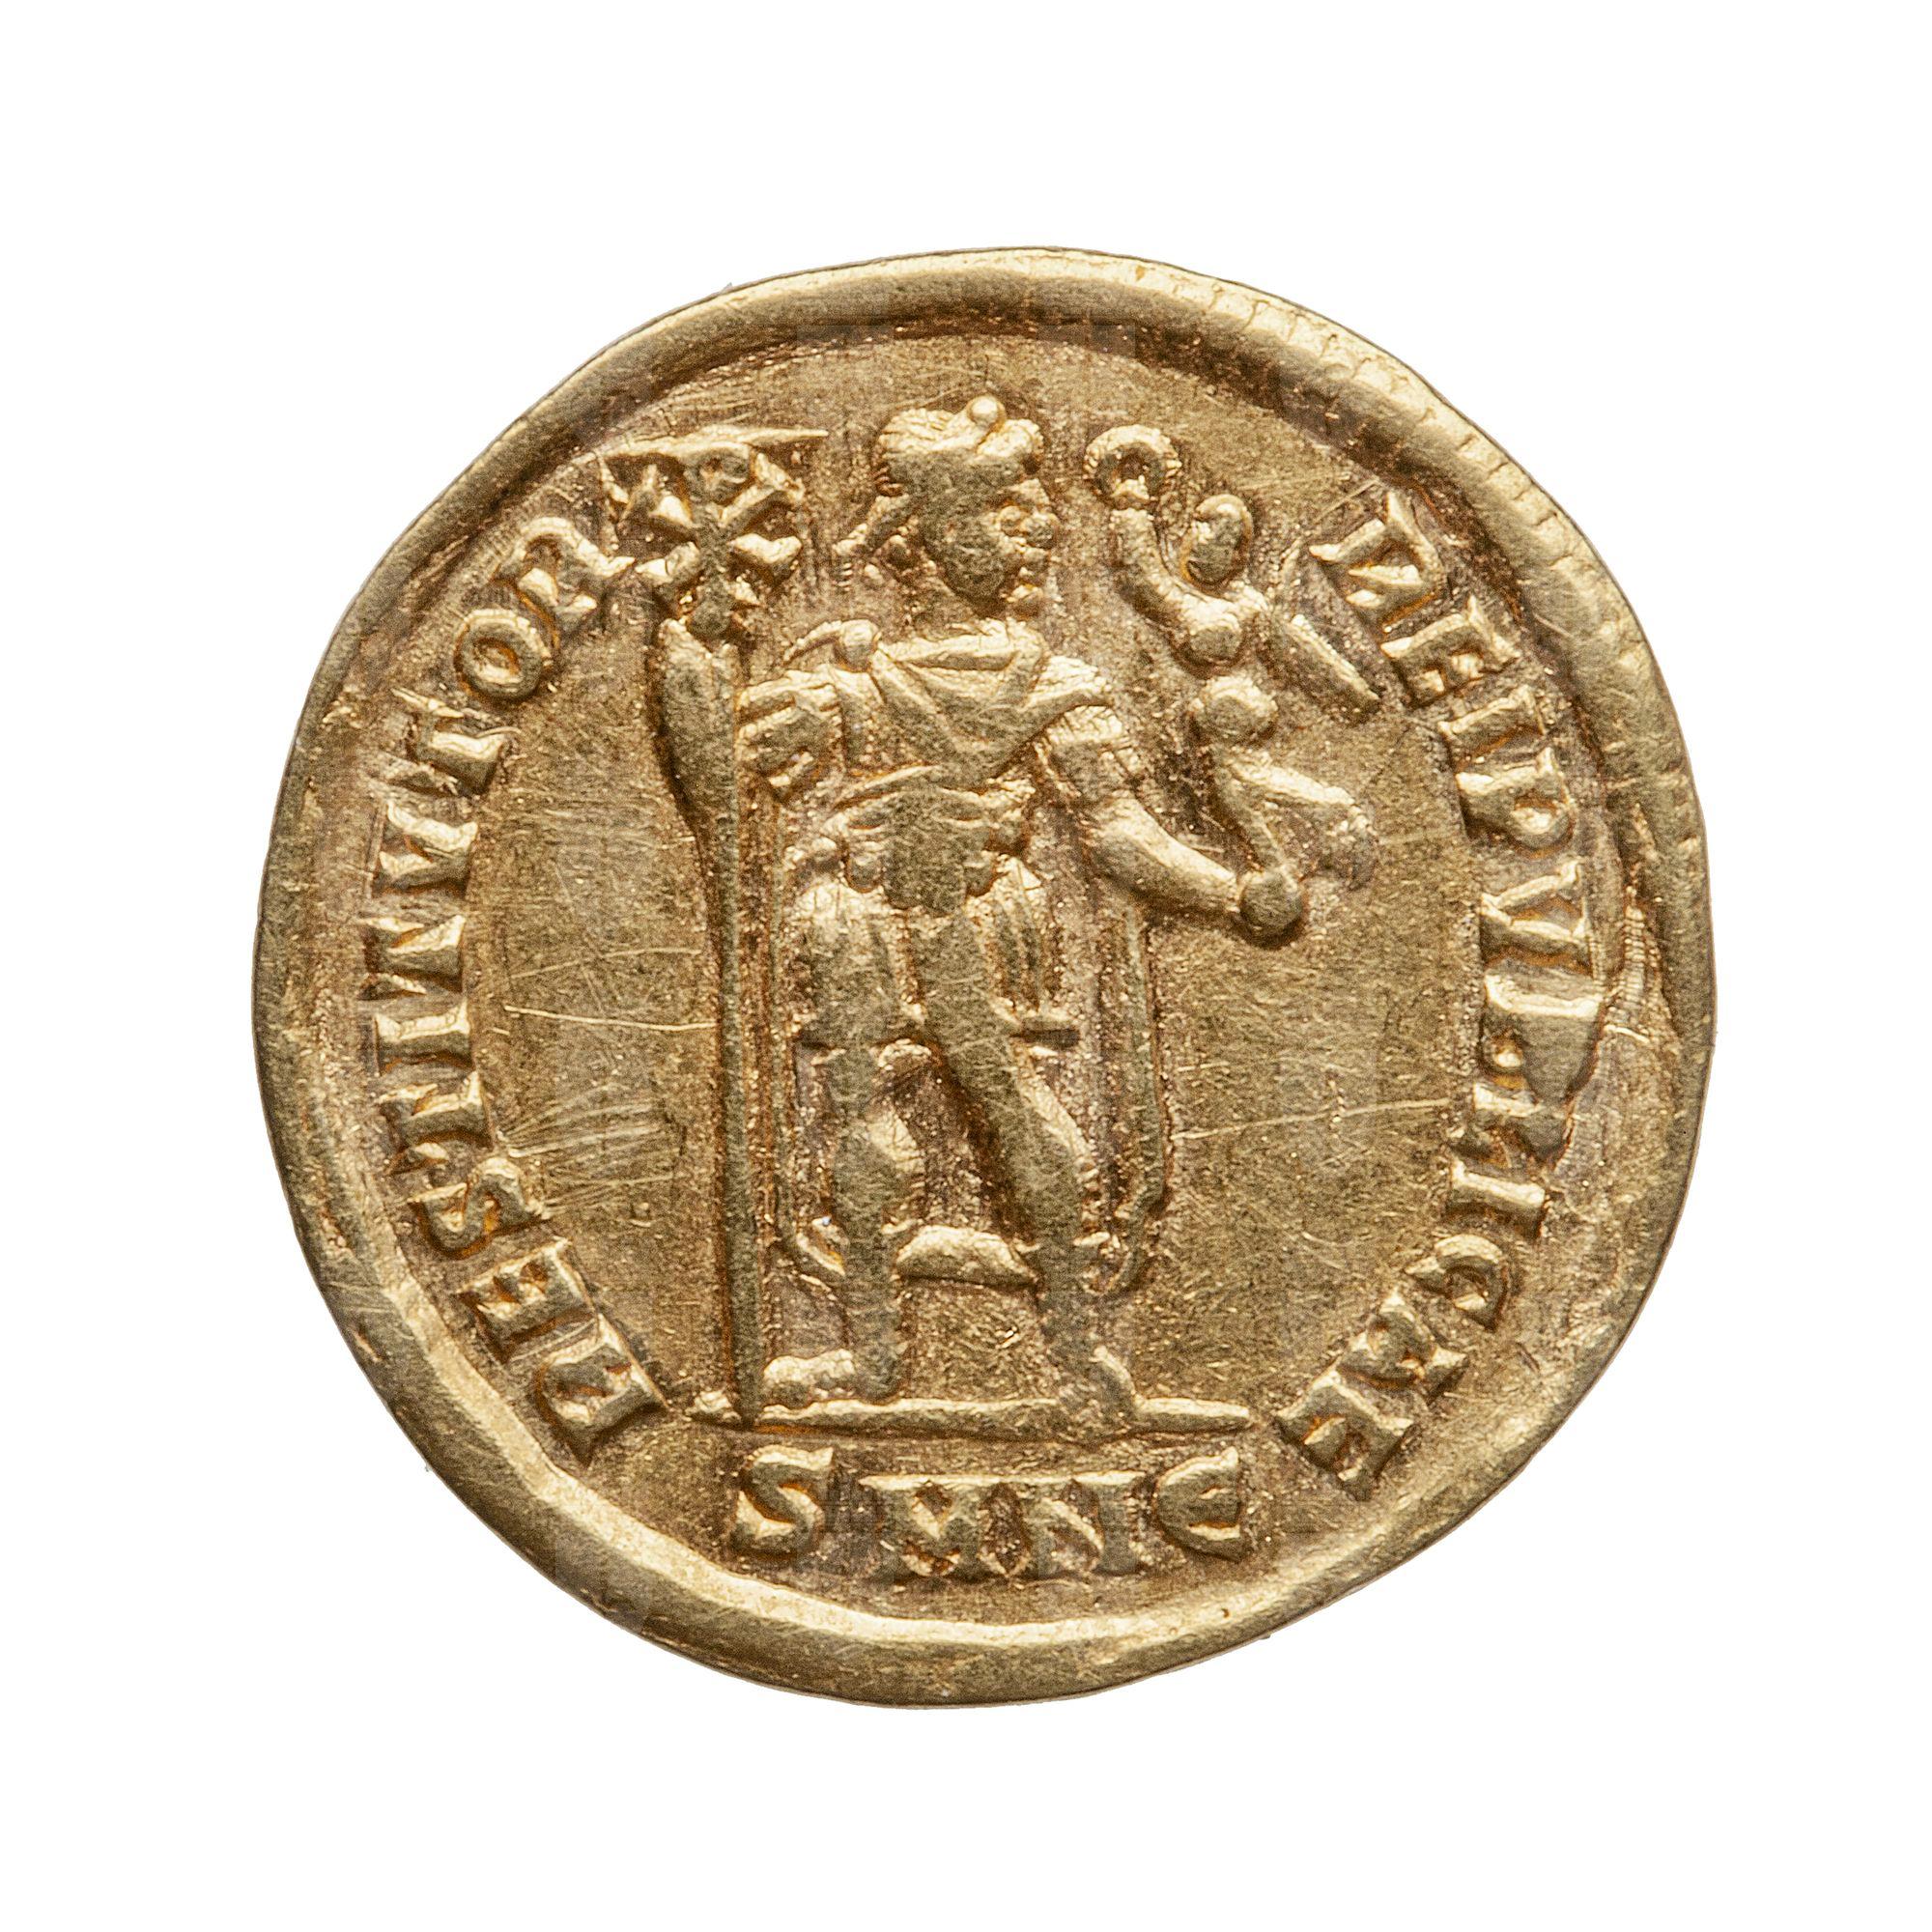 https://catalogomusei.comune.trieste.it/samira/resource/image/reperti-archeologici/Roma 2880 R Valentiniano.jpg?token=651506e2d2fca